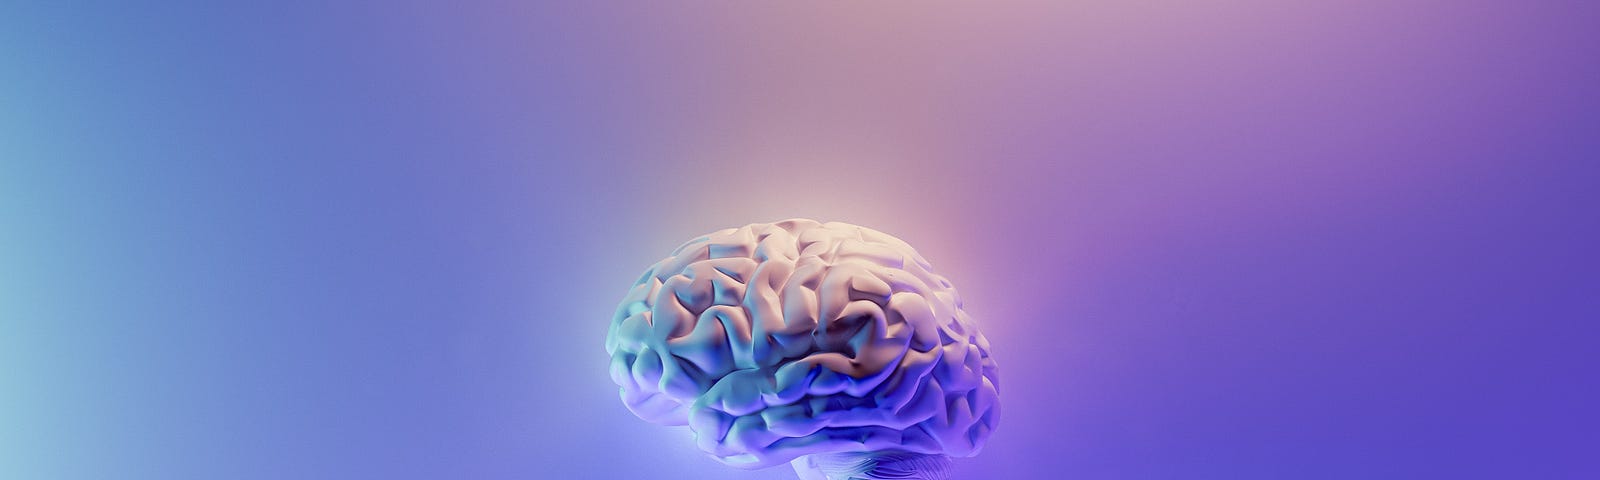 Illuminated human brain.